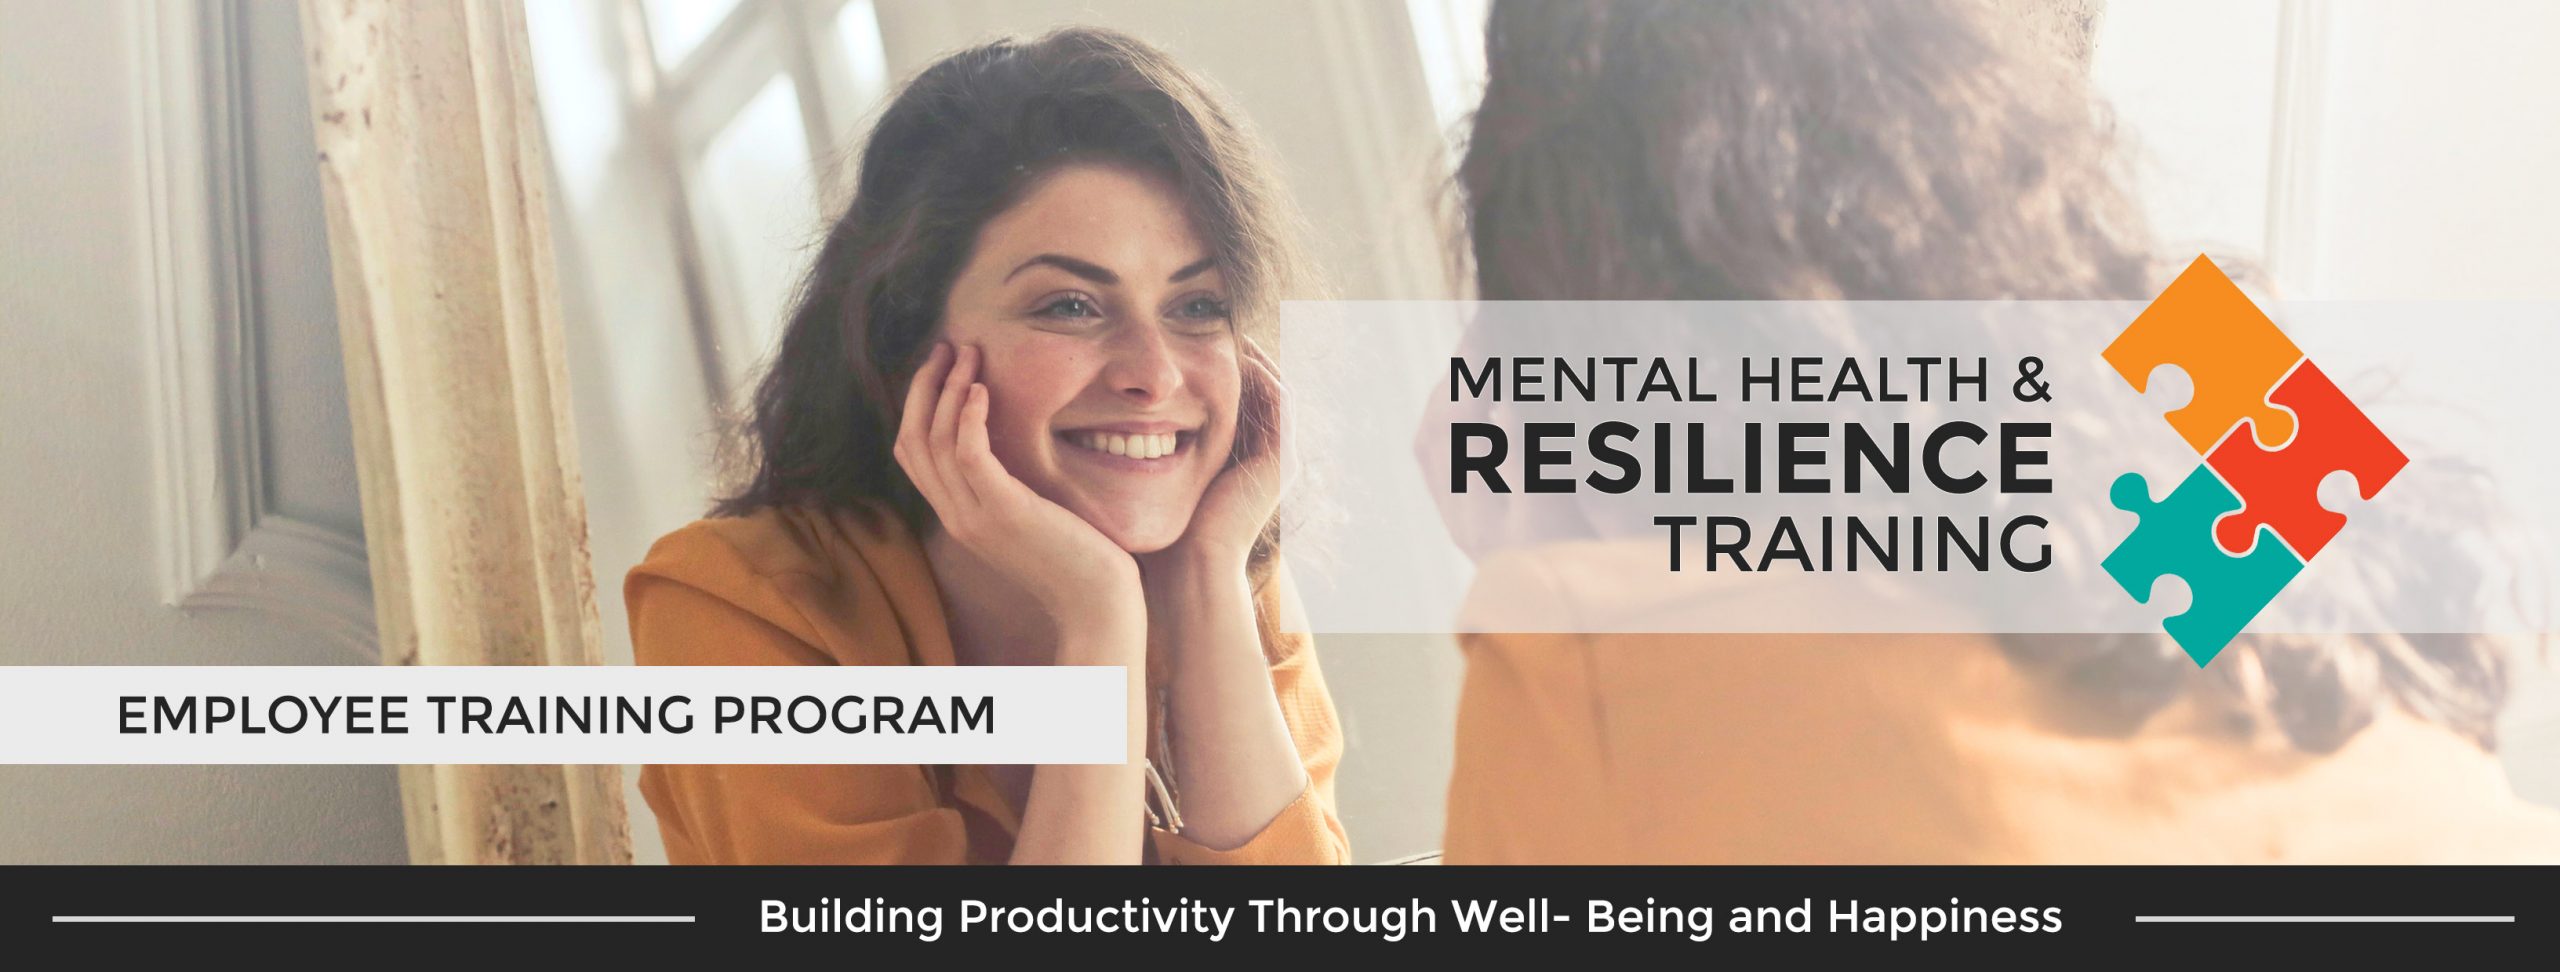 Training Mental Health Mental Resilience dengan Positive Psychology untuk Leadership dan Teamwork, Communication, Pelatihan Mental dan Motivasi Kerja Karyawan Indonesia